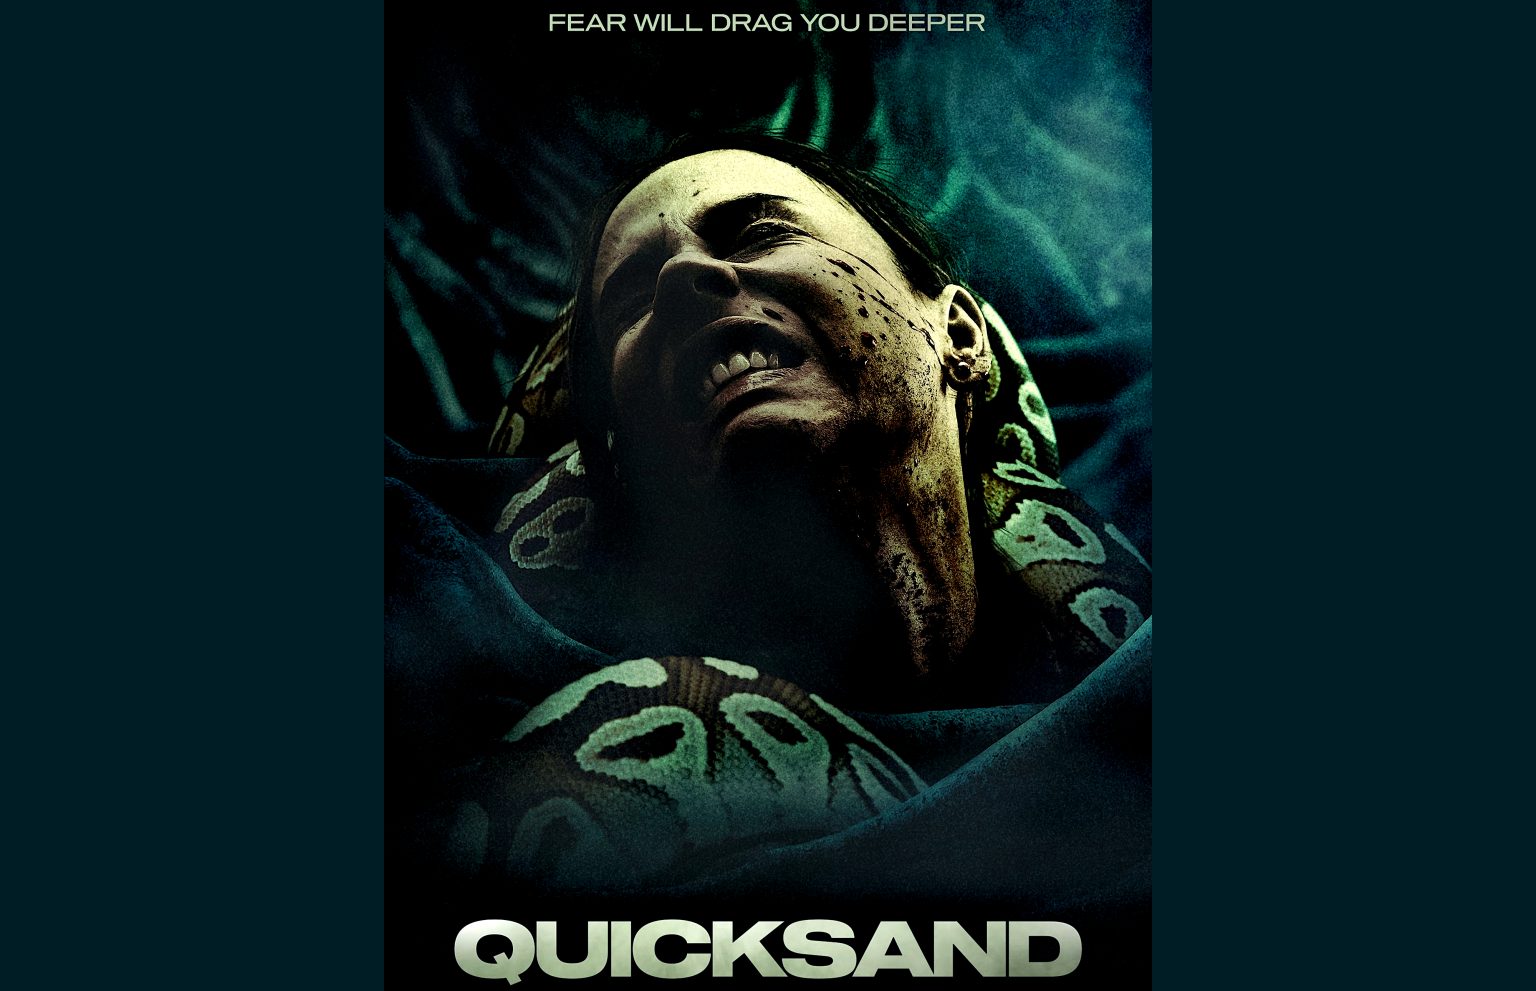 Quicksand (2023 movie) Thriller, Shudder, trailer, release date